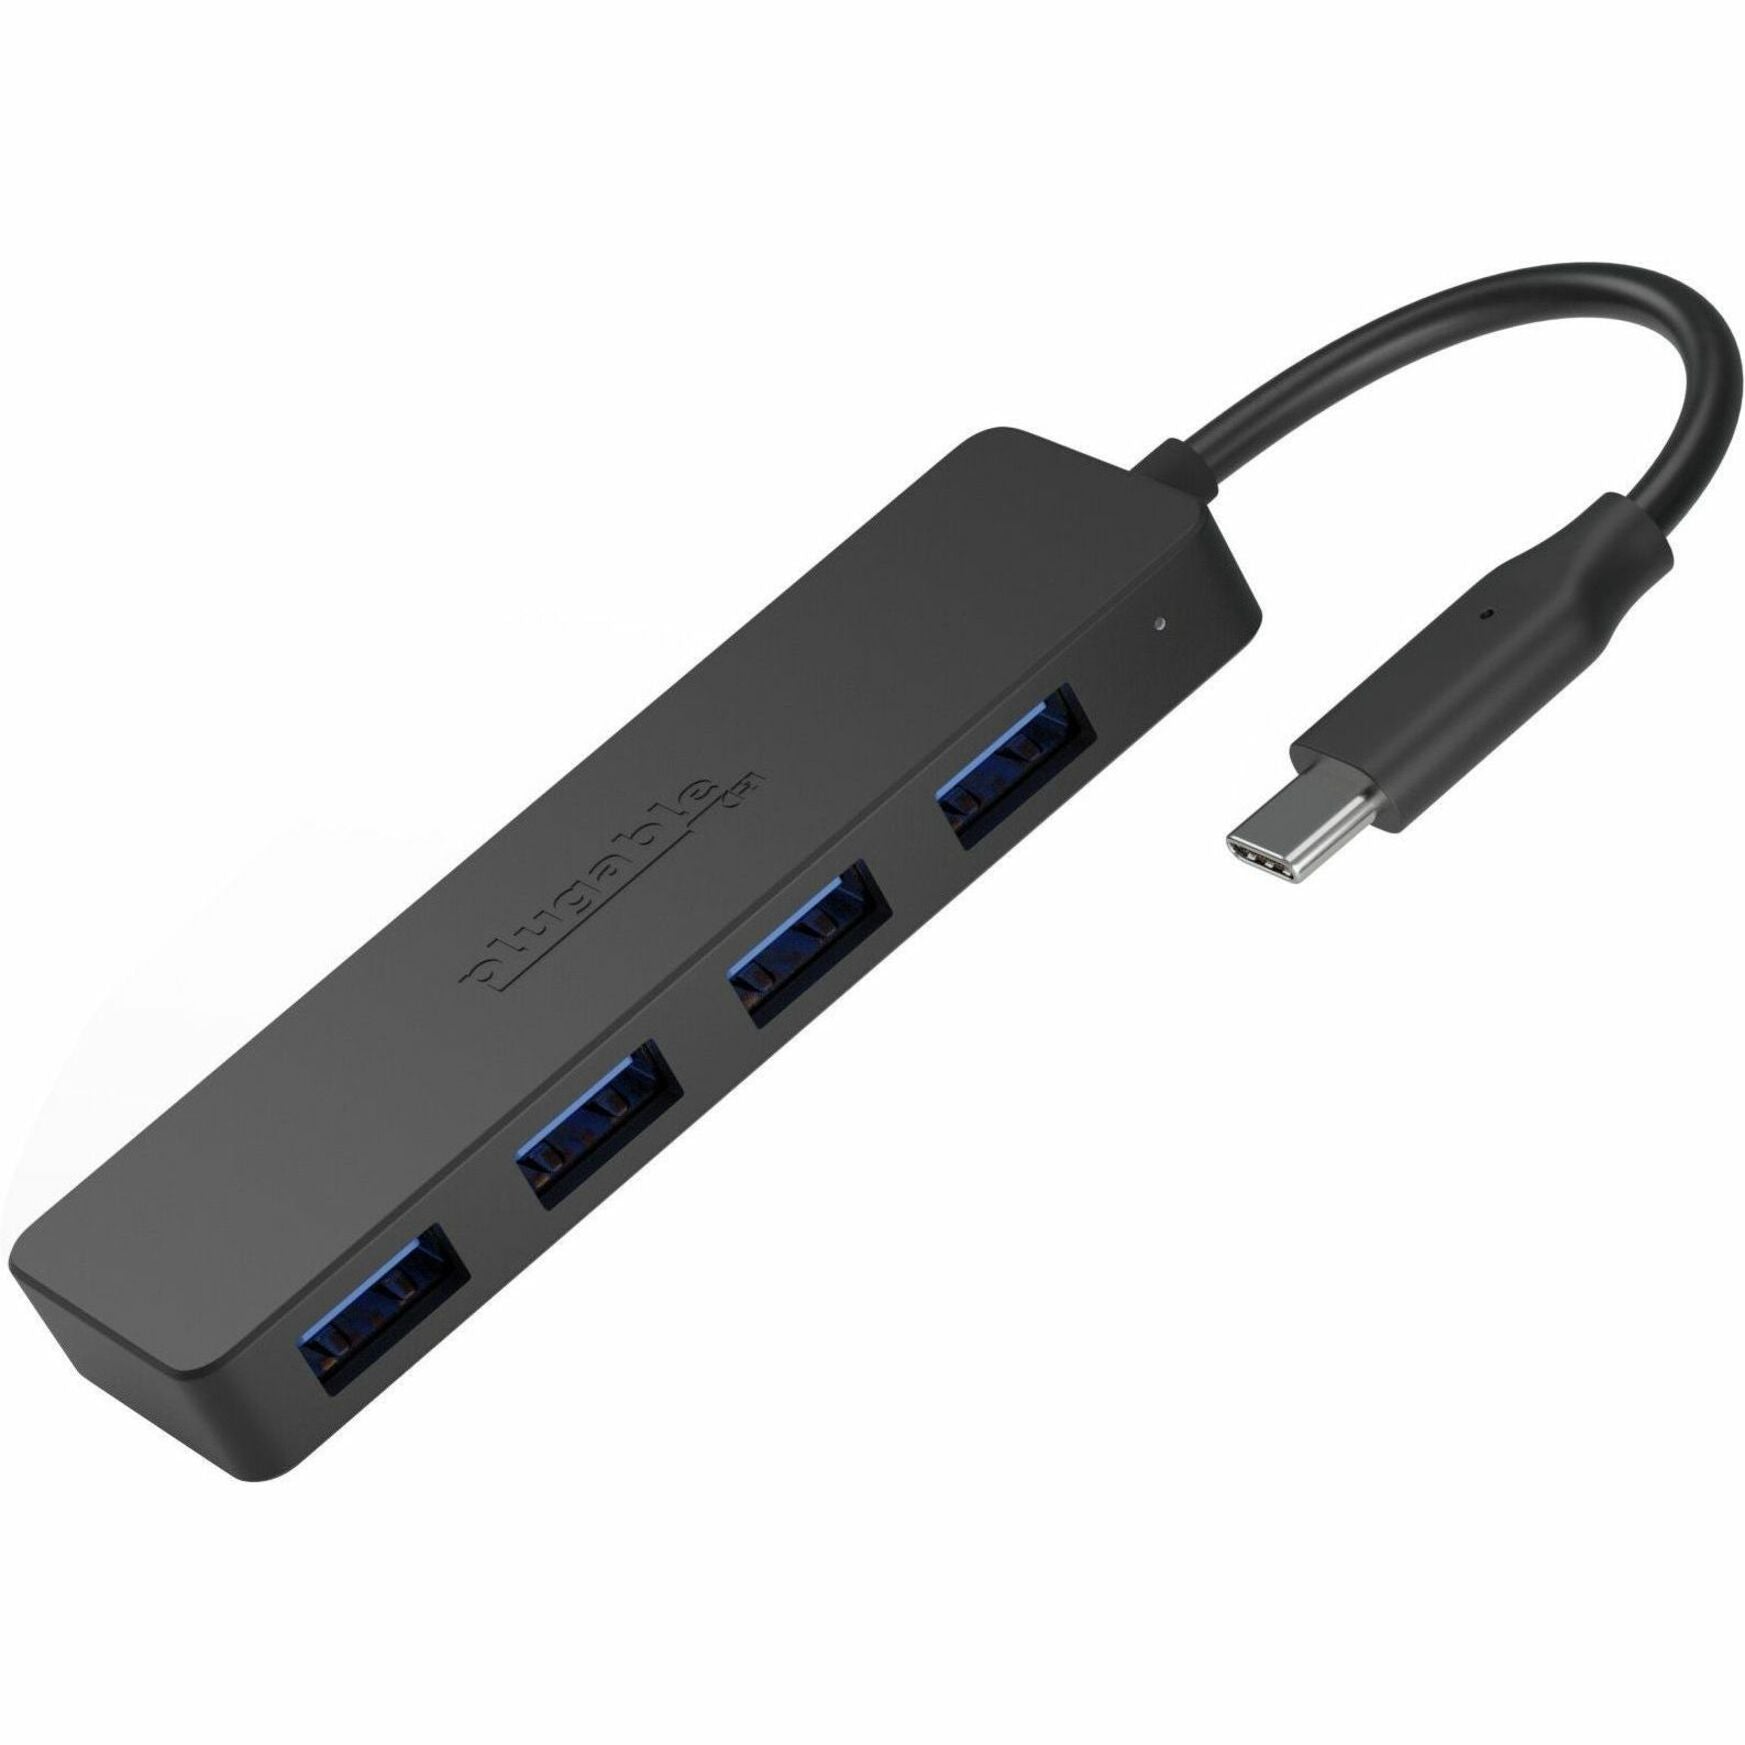 Plugable USBC-HUB4A USB Hub 4 USB 3.0 Ports Black